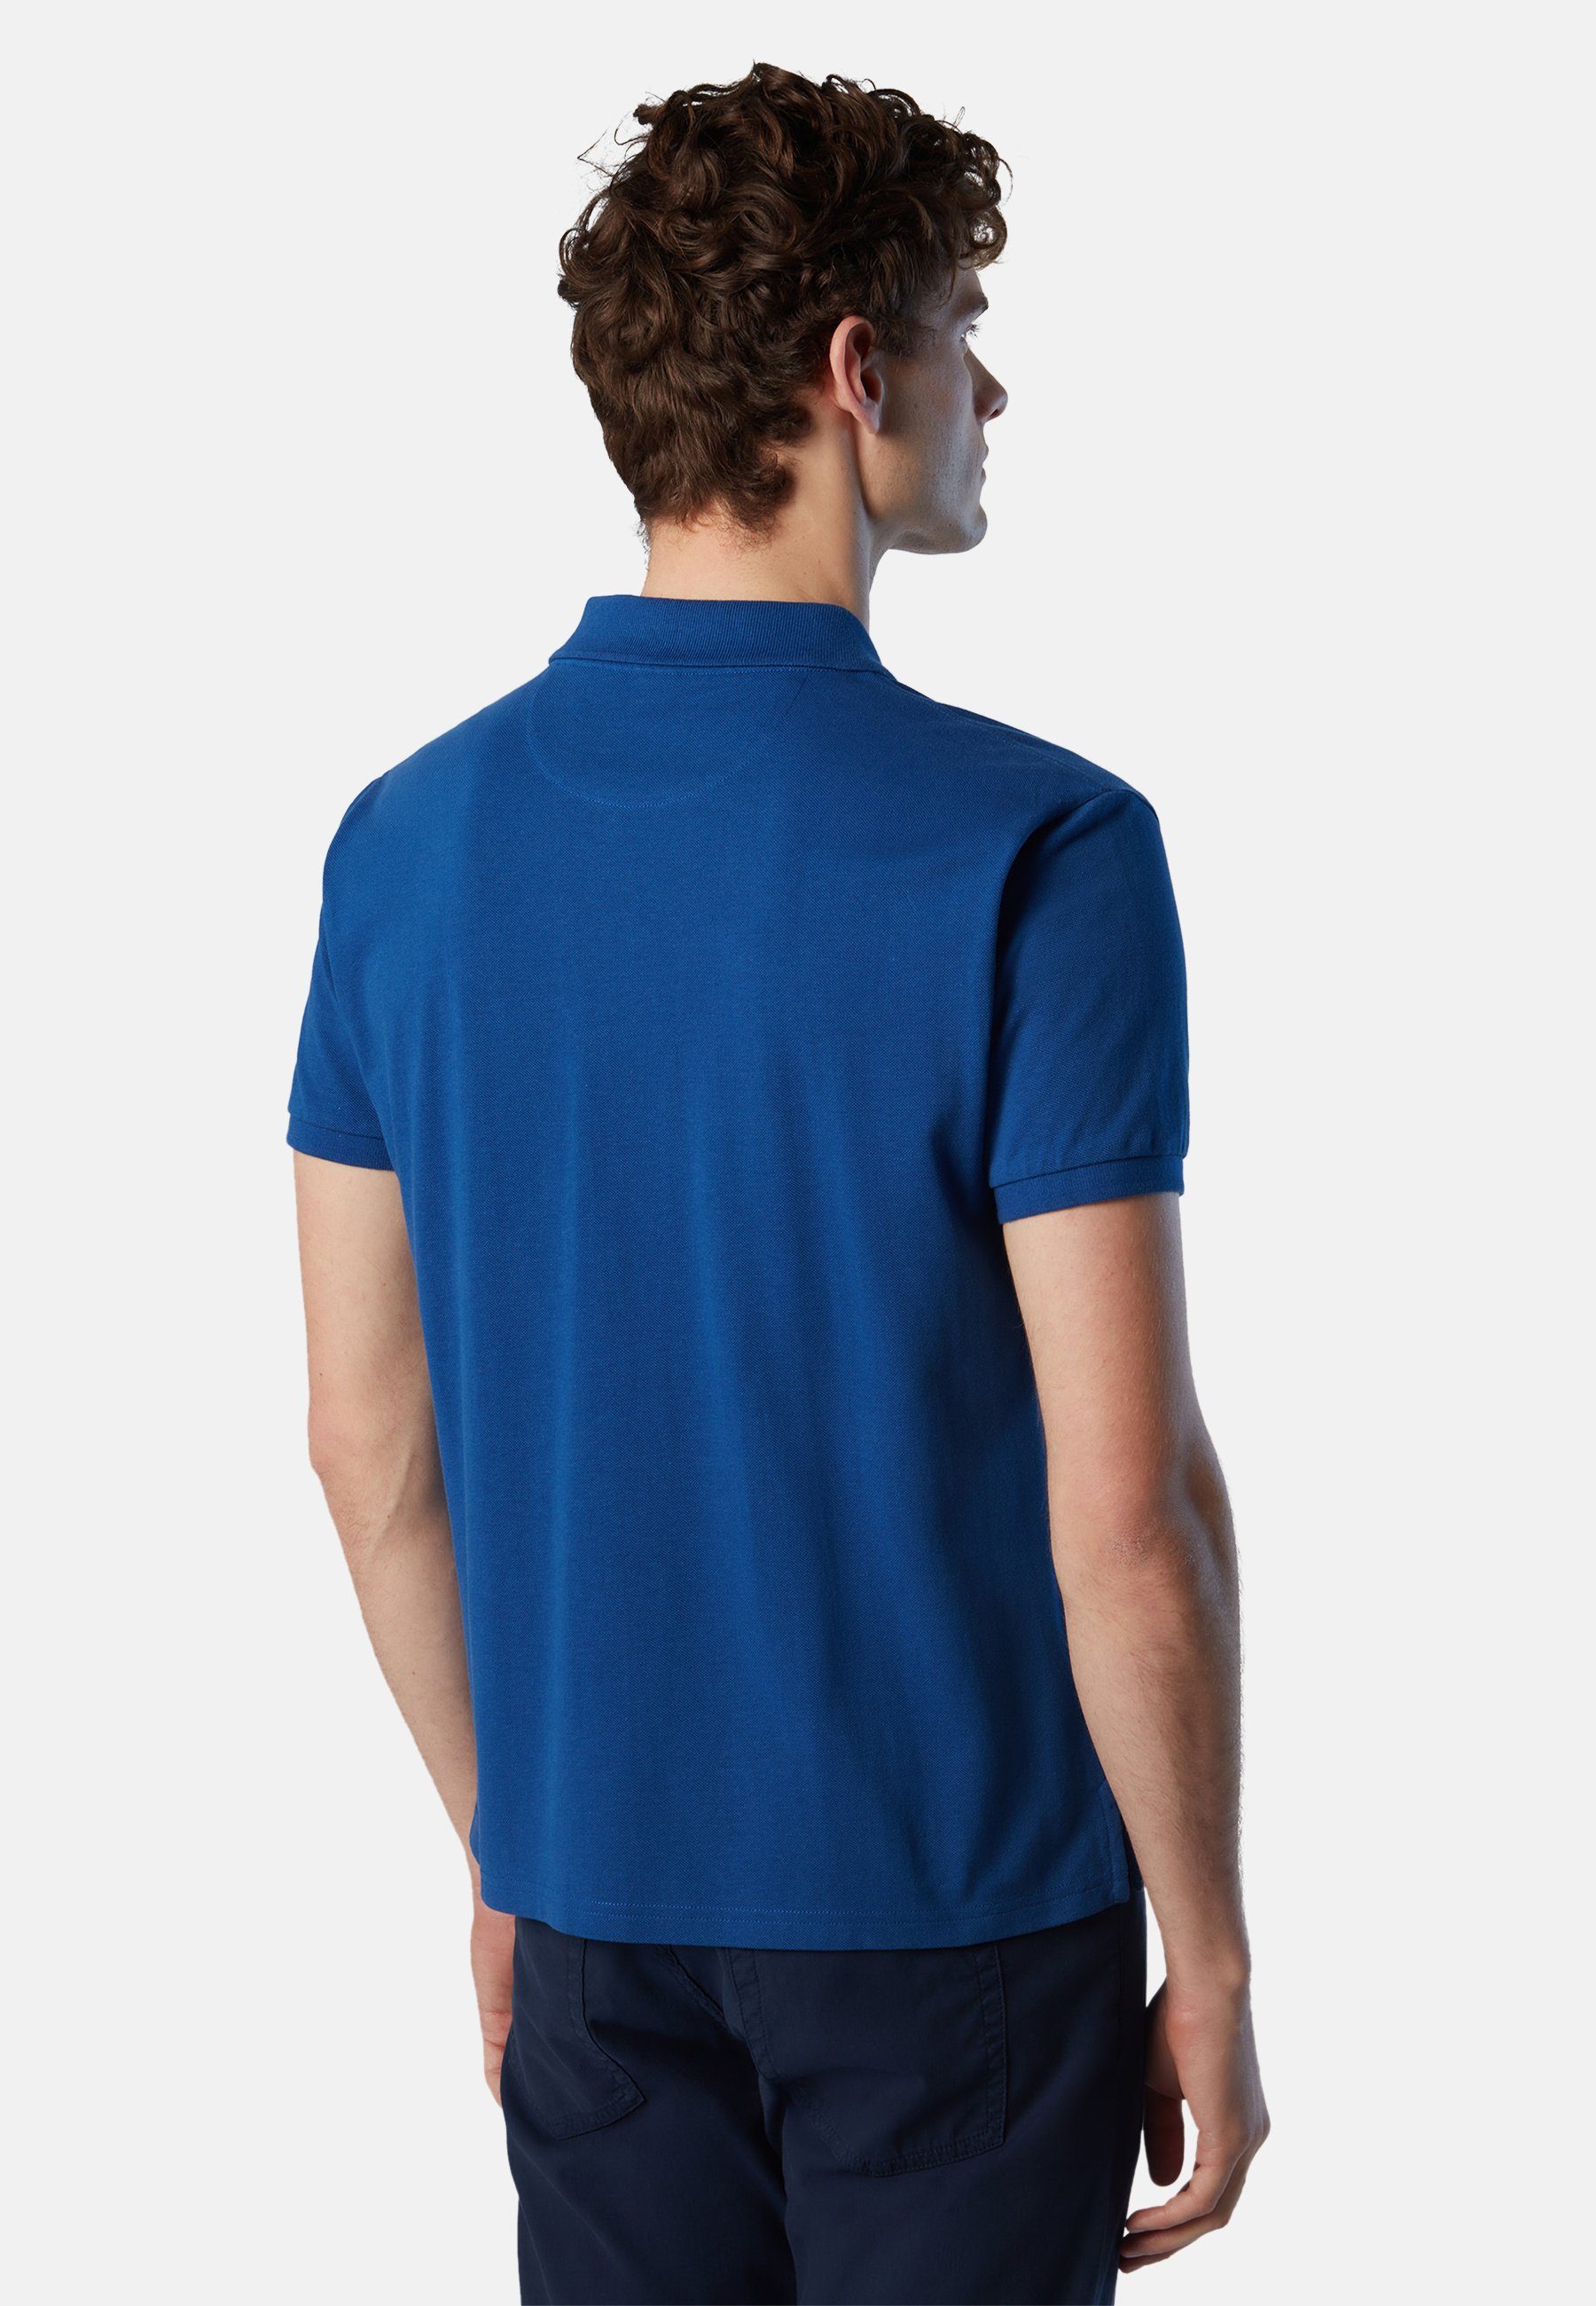 klassischem Poloshirt Sails Bio-Baumwolle Poloshirt North BRIGHT BLUE aus mit Design